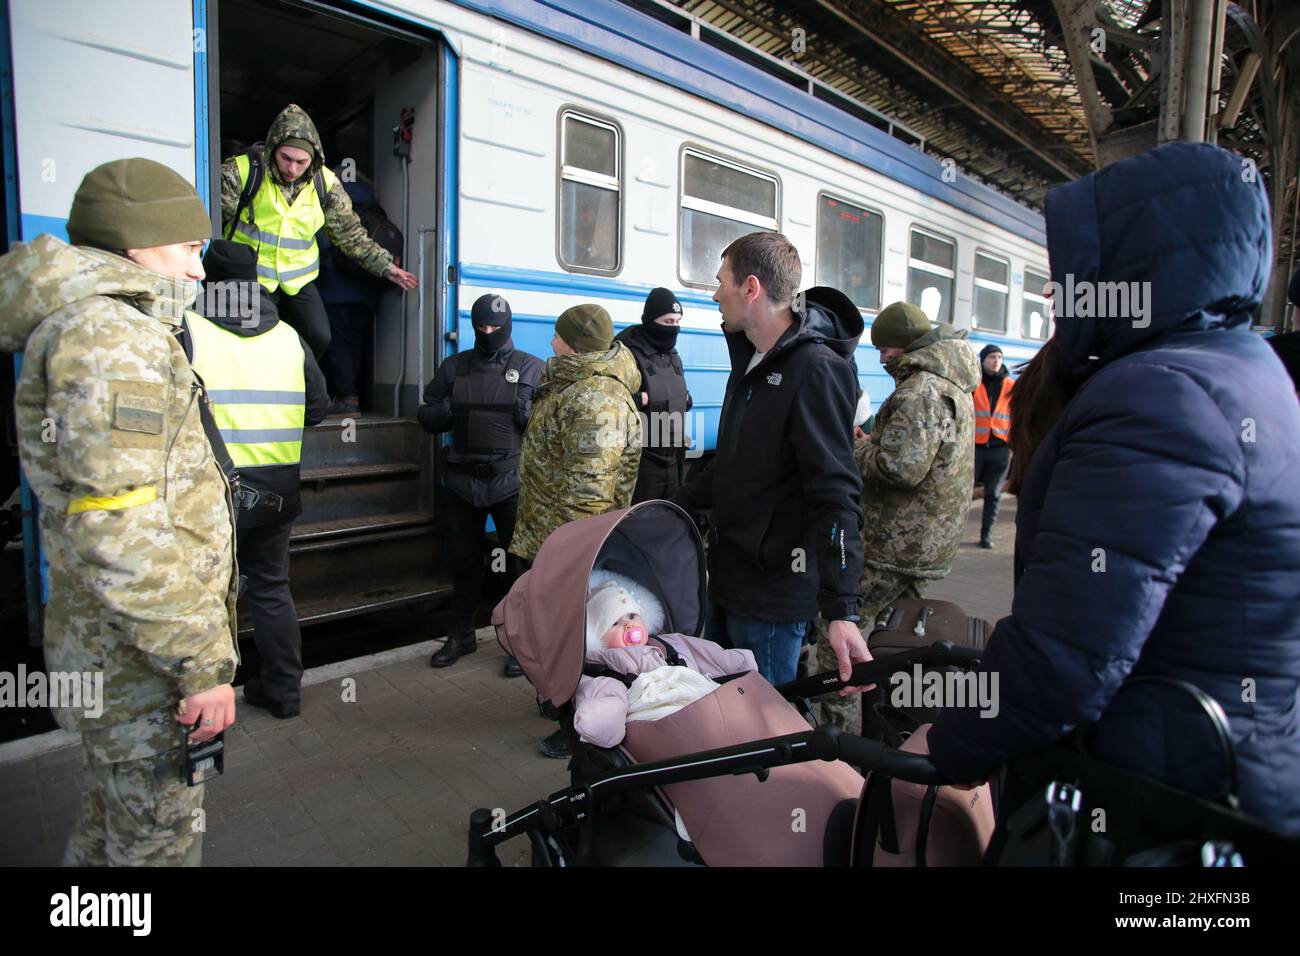 LVIV, UKRAINE - 11. MÄRZ 2022 - Eine Frau mit einem Baby im Kinderwagen steht auf der Plattform, während Menschen, die vor der russischen Invasion fliehen, auf einen Evakuierungszug warten Stockfoto